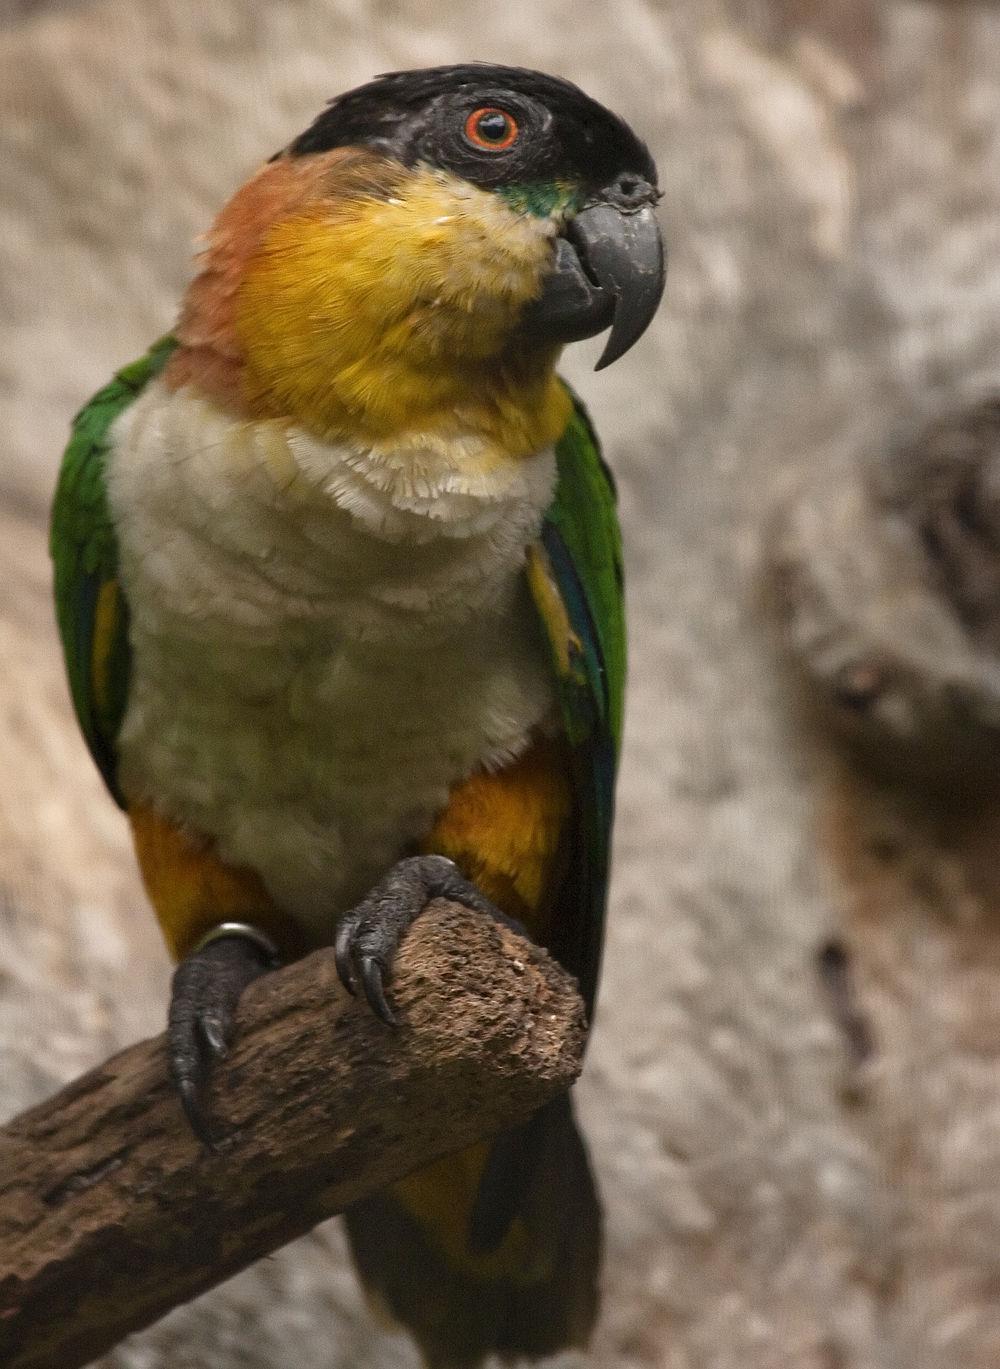 黑冠鹦哥 / Black-headed Parrot / Pionites melanocephalus